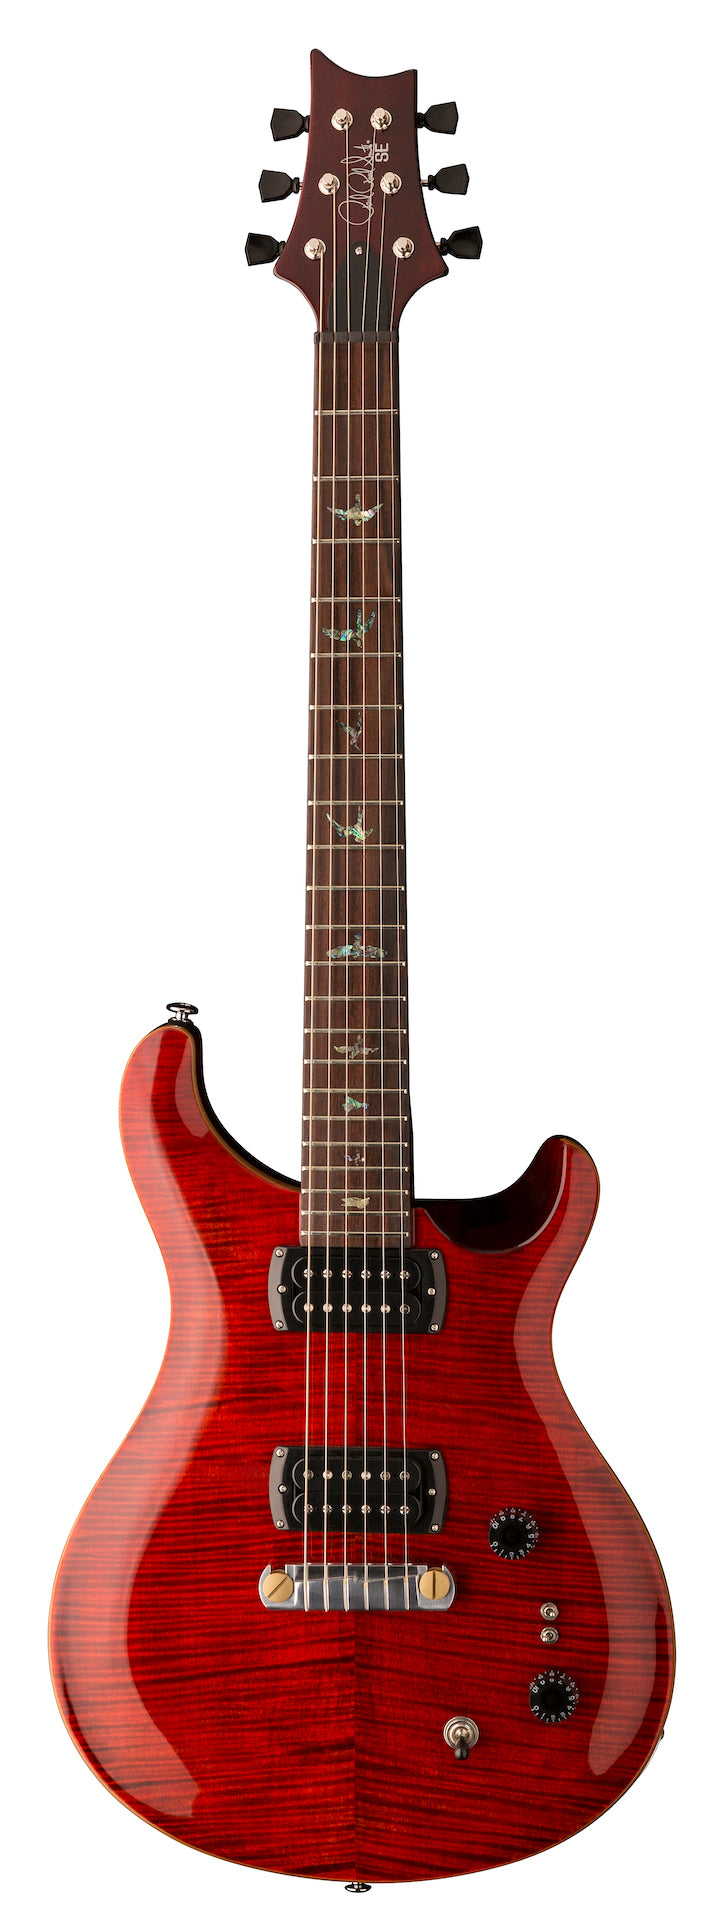 PRS SE Paul's Guitar - Fire Red - HIENDGUITAR   PRS SE GUITAR